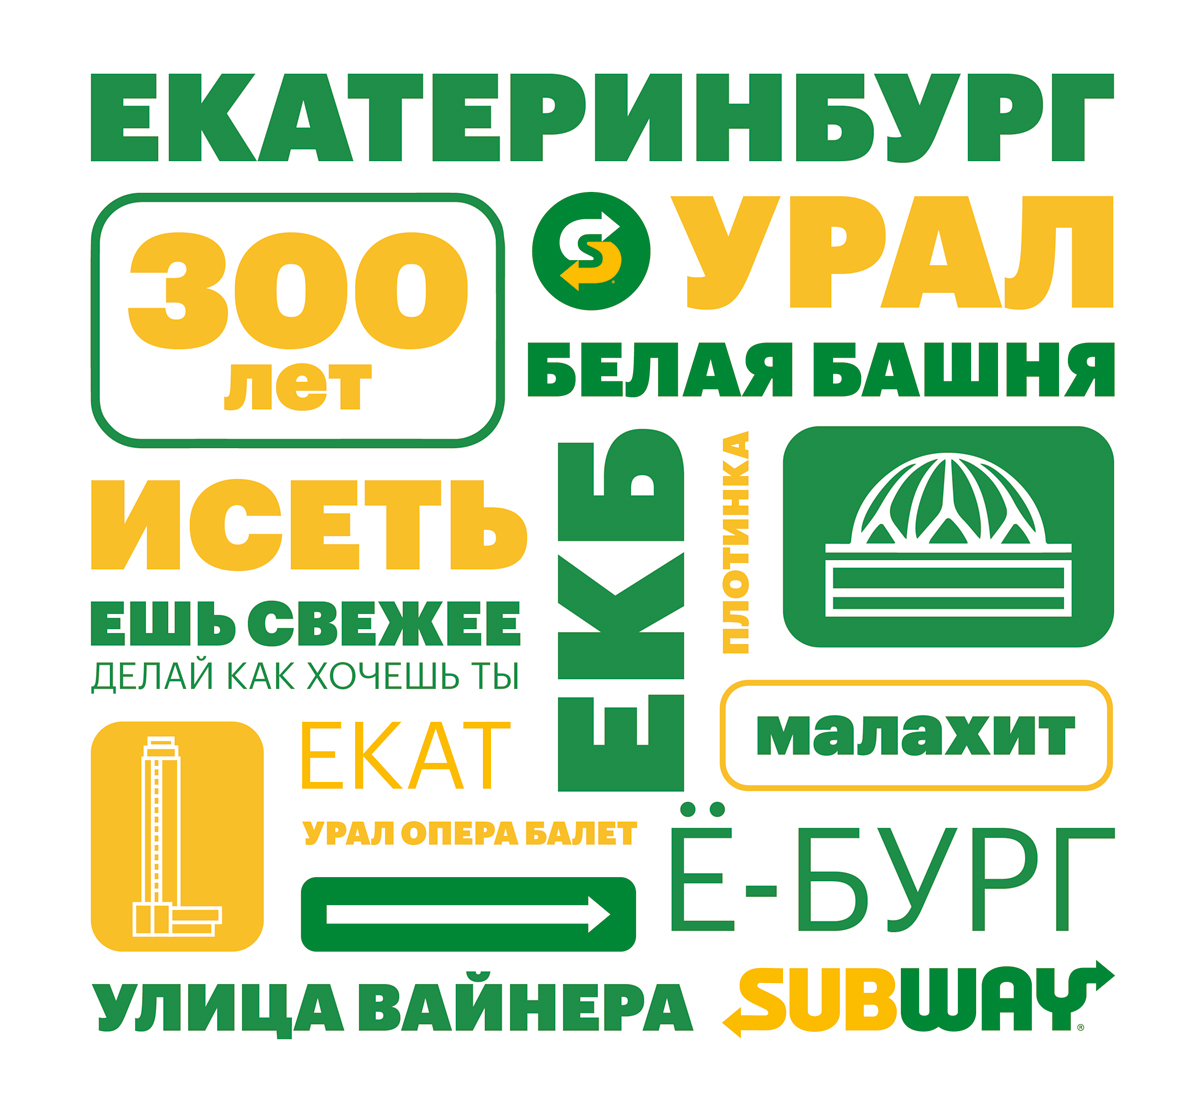 Subway выпустила праздничную упаковку для сэндвичей в честь юбилея Екатеринбурга | Новости компании